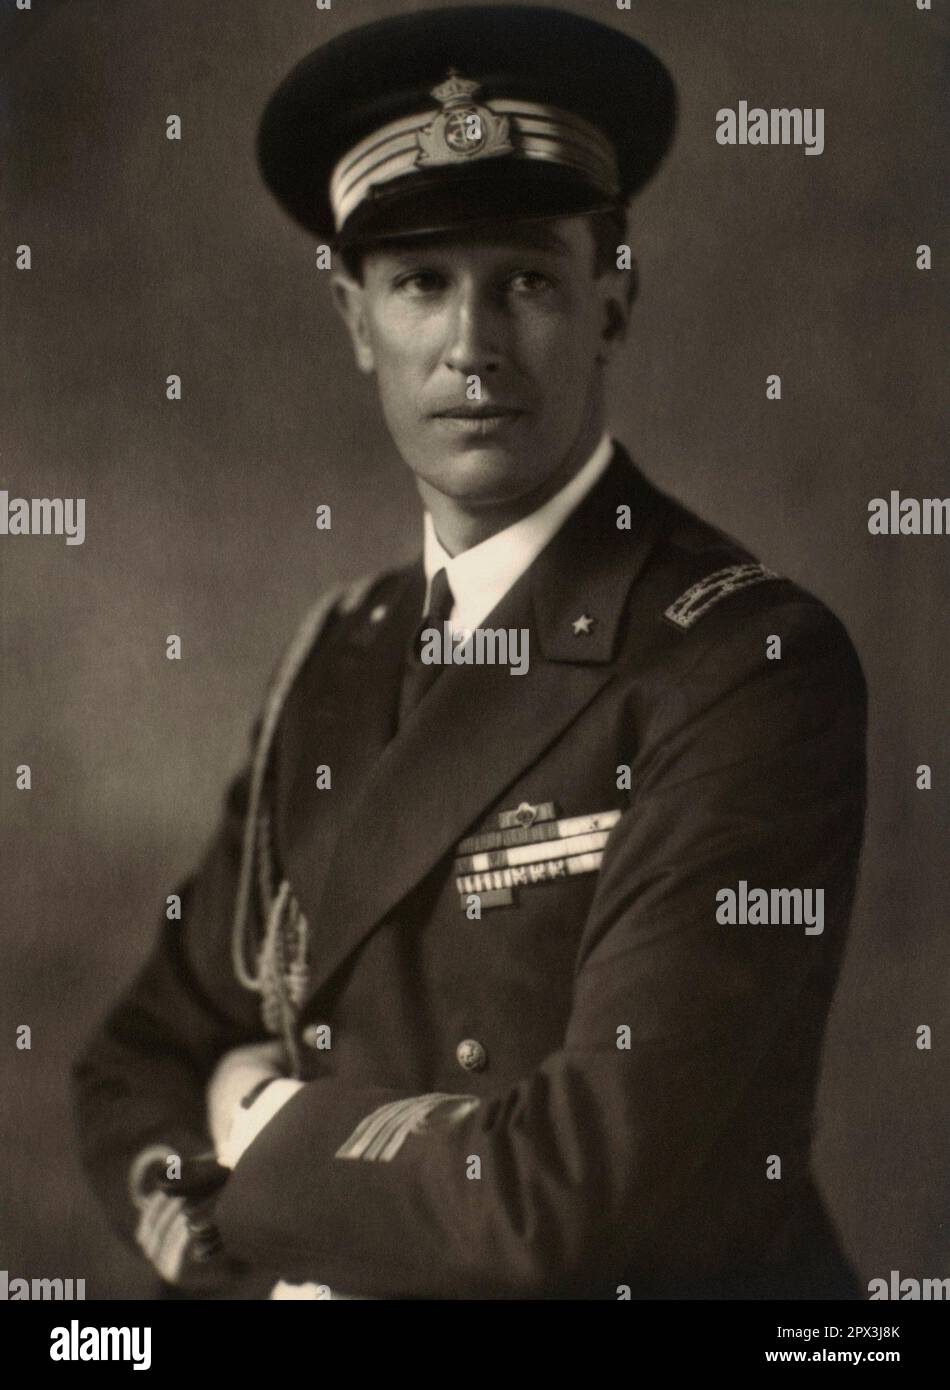 1935 c., Roma , ITALIA : l'Ammiraglio della Marina italiana principe AIMONE di SAVOIA Duca d'AOSTA ( 1900 - 1948 ). Secondo figlio del Principe Emanuele Filiberto Duca di Aosta gli fu conferito il titolo DI DUCA DI SPOLETO nel 1904 . Ereditò il titolo di Duca d'Aosta nel 1942 dopo la morte del fratello Principe Amedeo in un campo di guerra britannico a Nairobi . Foto di EVA BARRETT ( 1879 - 1950 ). - SAVOY - FOTO STORICHE - STORIA - PRINCIPE - DUCA - DUCA D'Aosta - ITALIA - CASA SAVOIA - REALI - NOBILTa' ITALIANA - SAVOY - NOBILTÀ - ROYALTY - nobili italiani - nobiltà italiana - ritratto Foto Stock